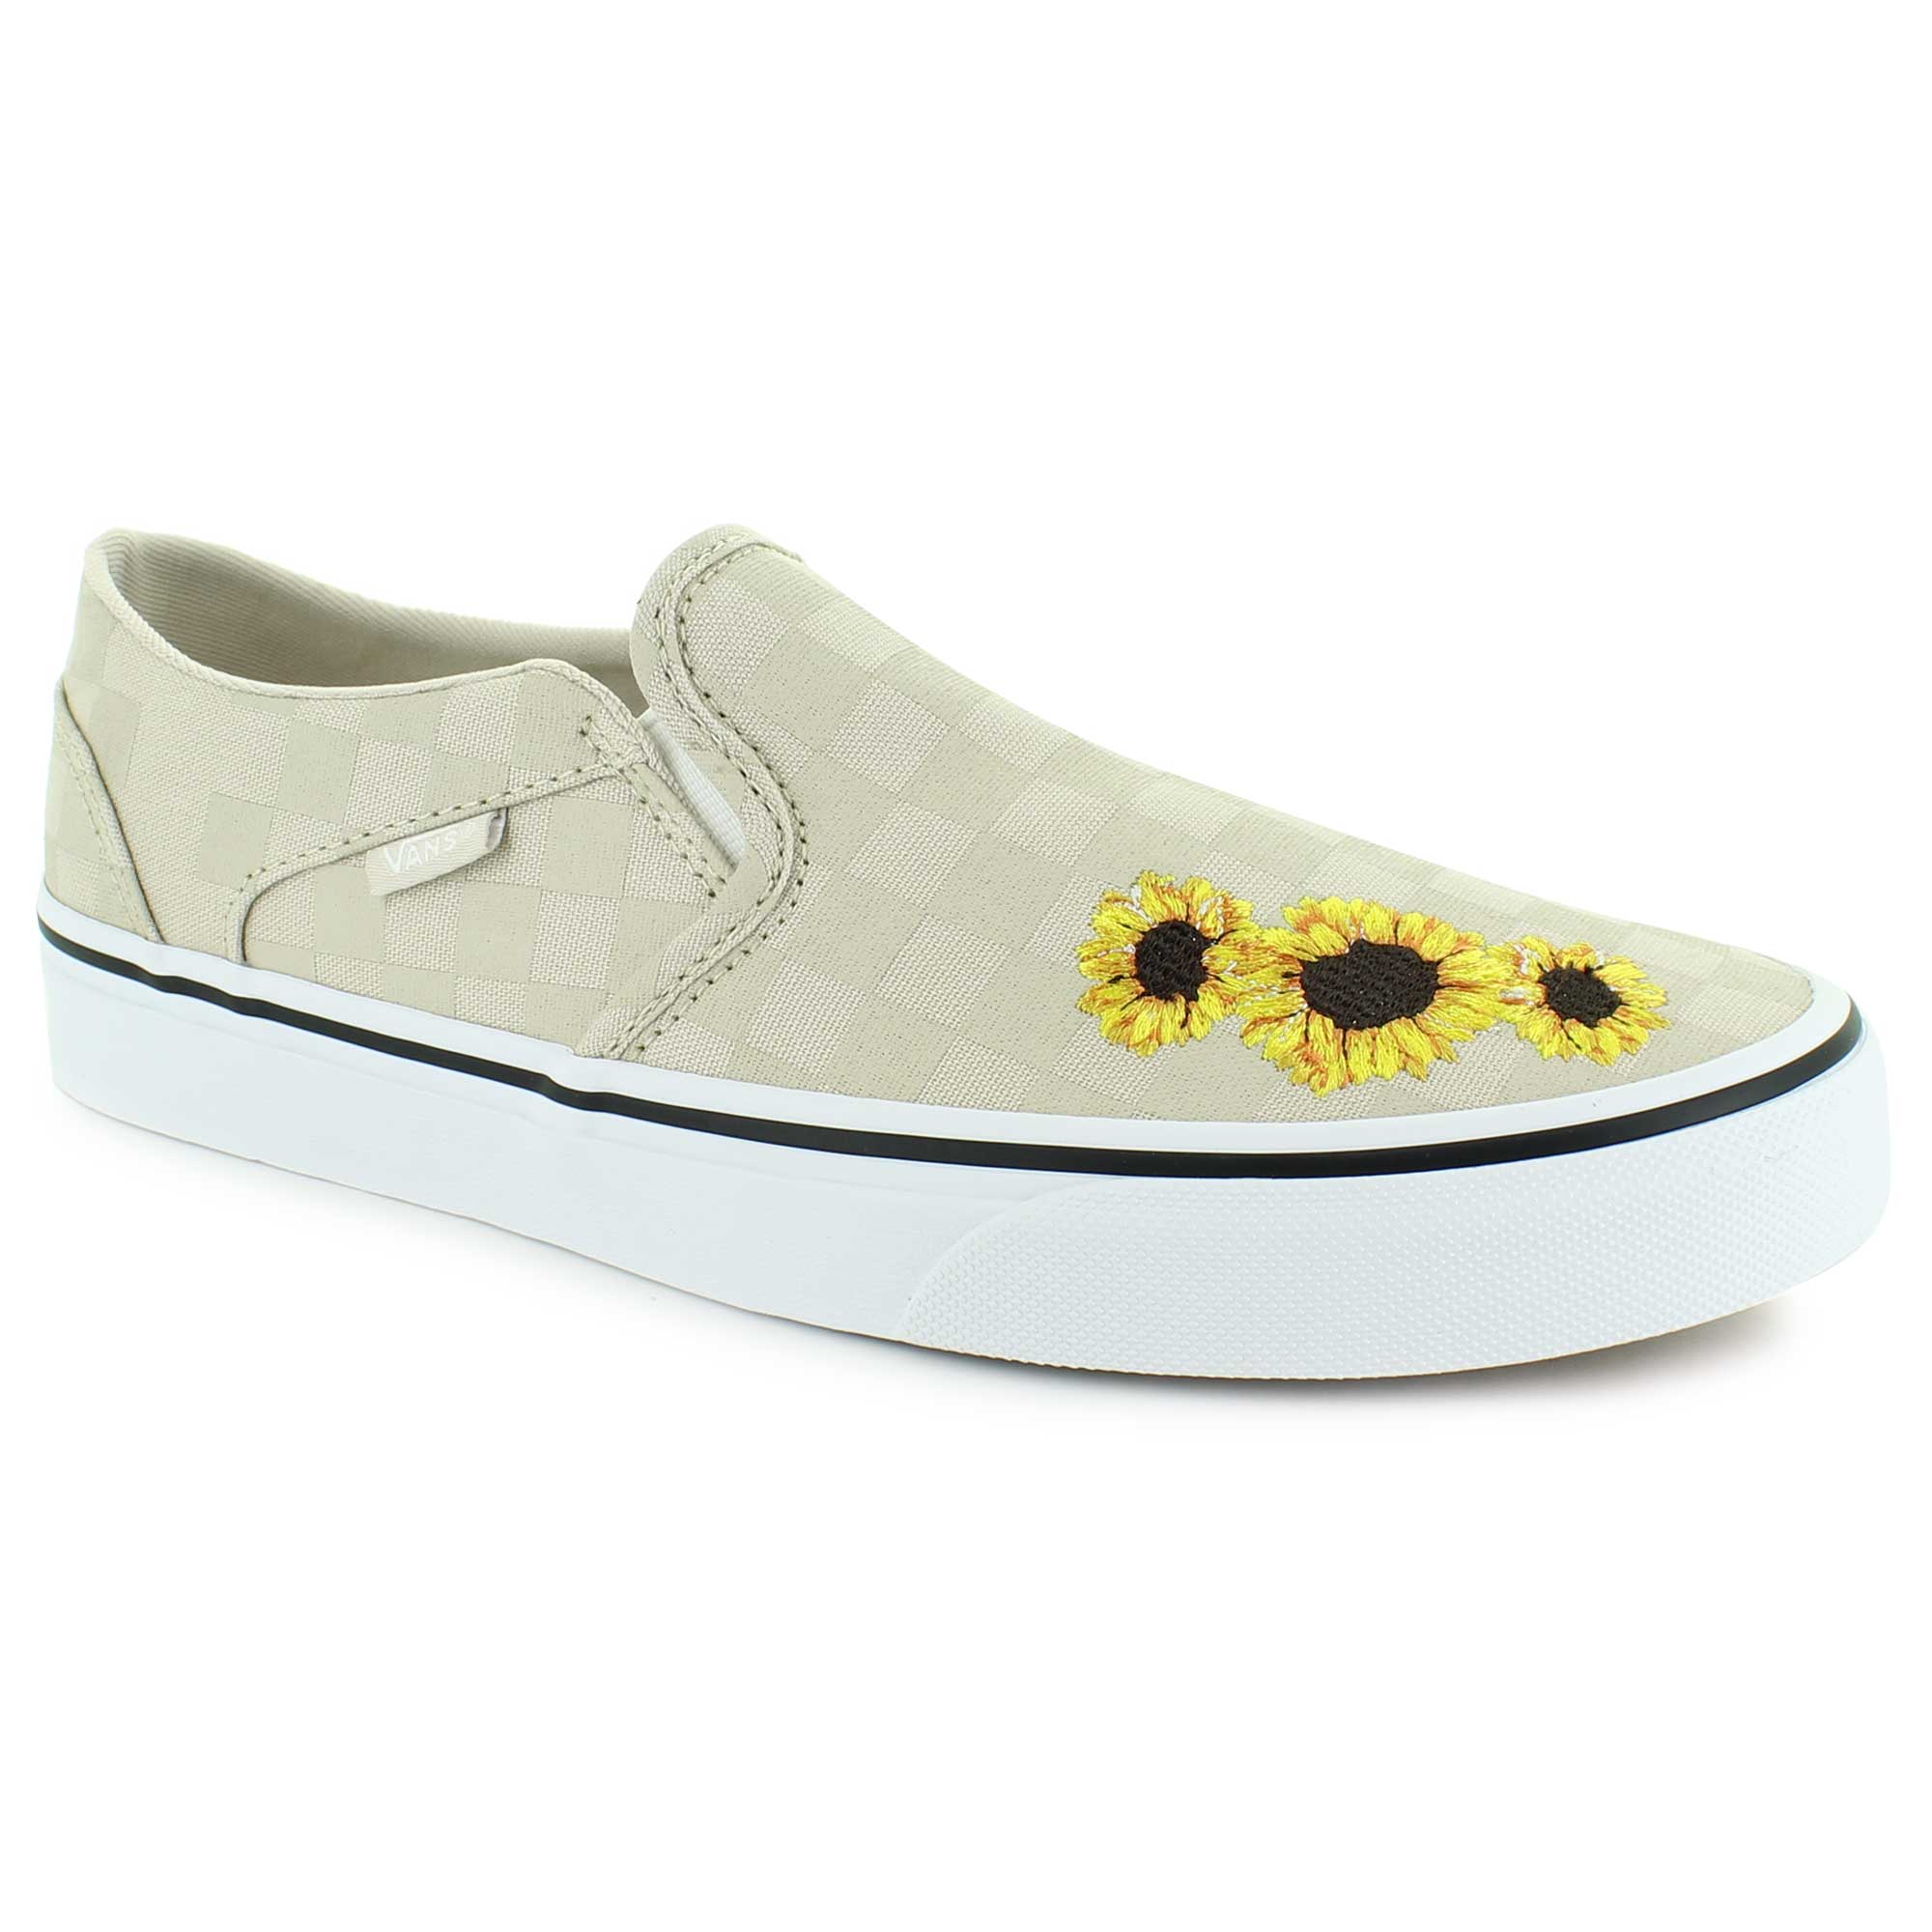 VANS Classic Slip-On Girls Size 3Y Sunflower Yellow White Slip On